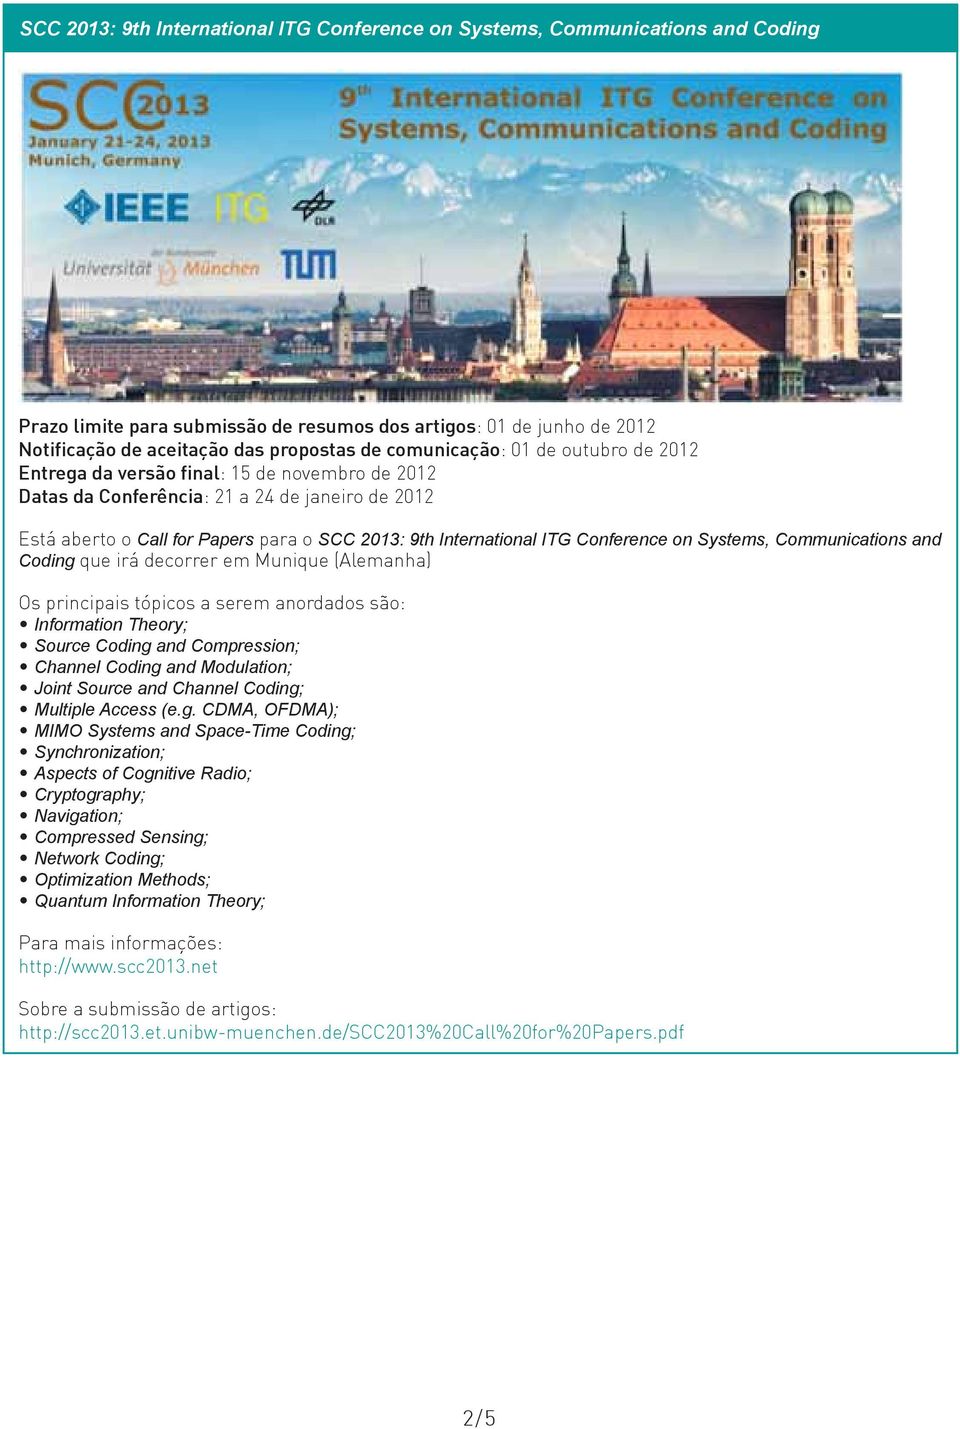 ITG Conference on Systems, Communications and Coding que irá decorrer em Munique (Alemanha) Os principais tópicos a serem anordados são: Information Theory; Source Coding and Compression; Channel